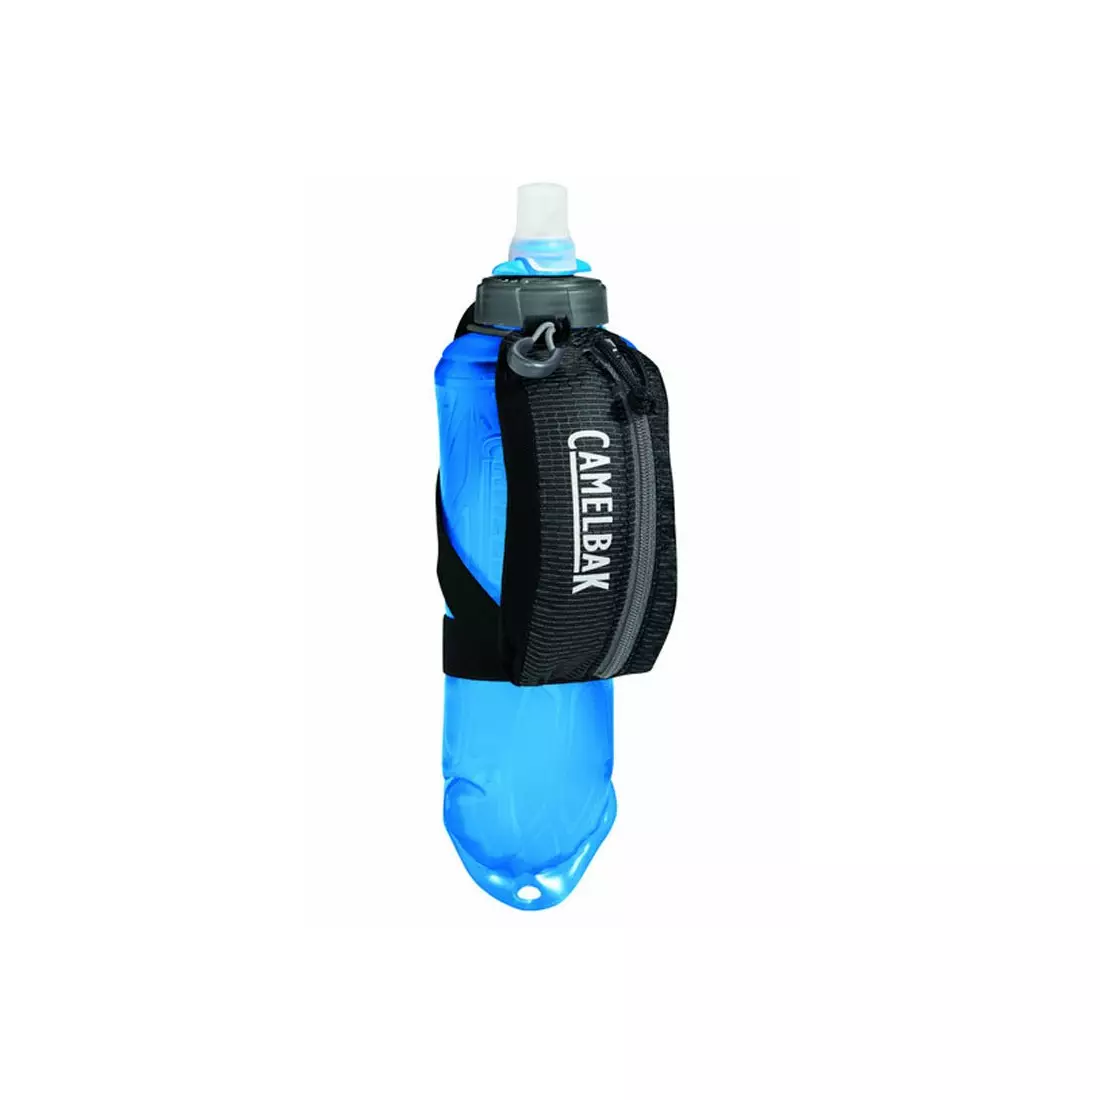 CAMELBAK Rukojeť s měkkou lahví s tekoucí vodou Nano Handheld Quick Stow Flask c1923/002000/UNI